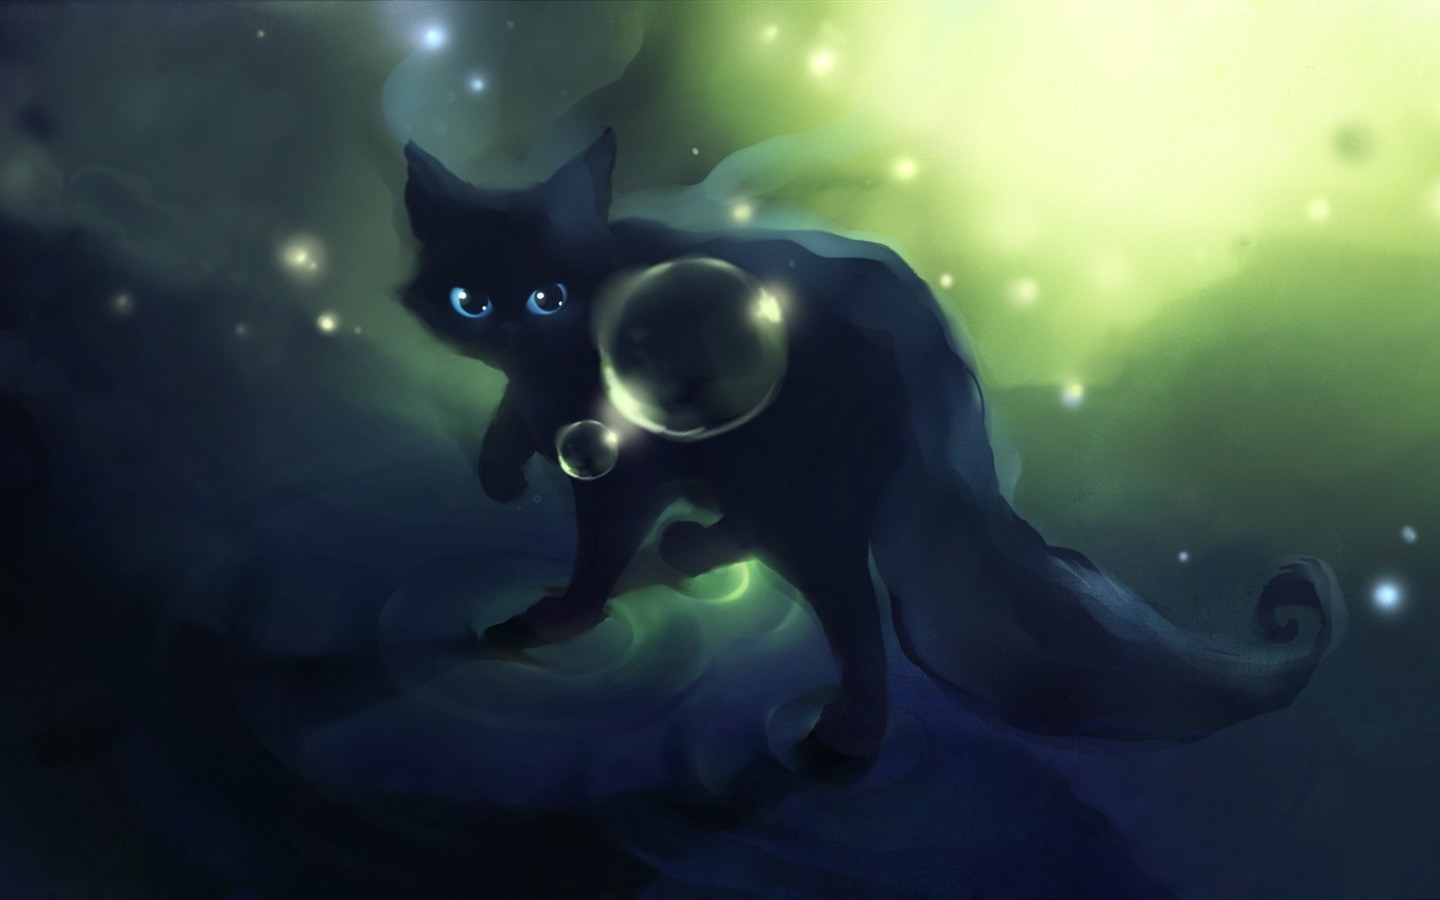 Apofiss pequeño gato negro papel pintado acuarelas #12 - 1440x900